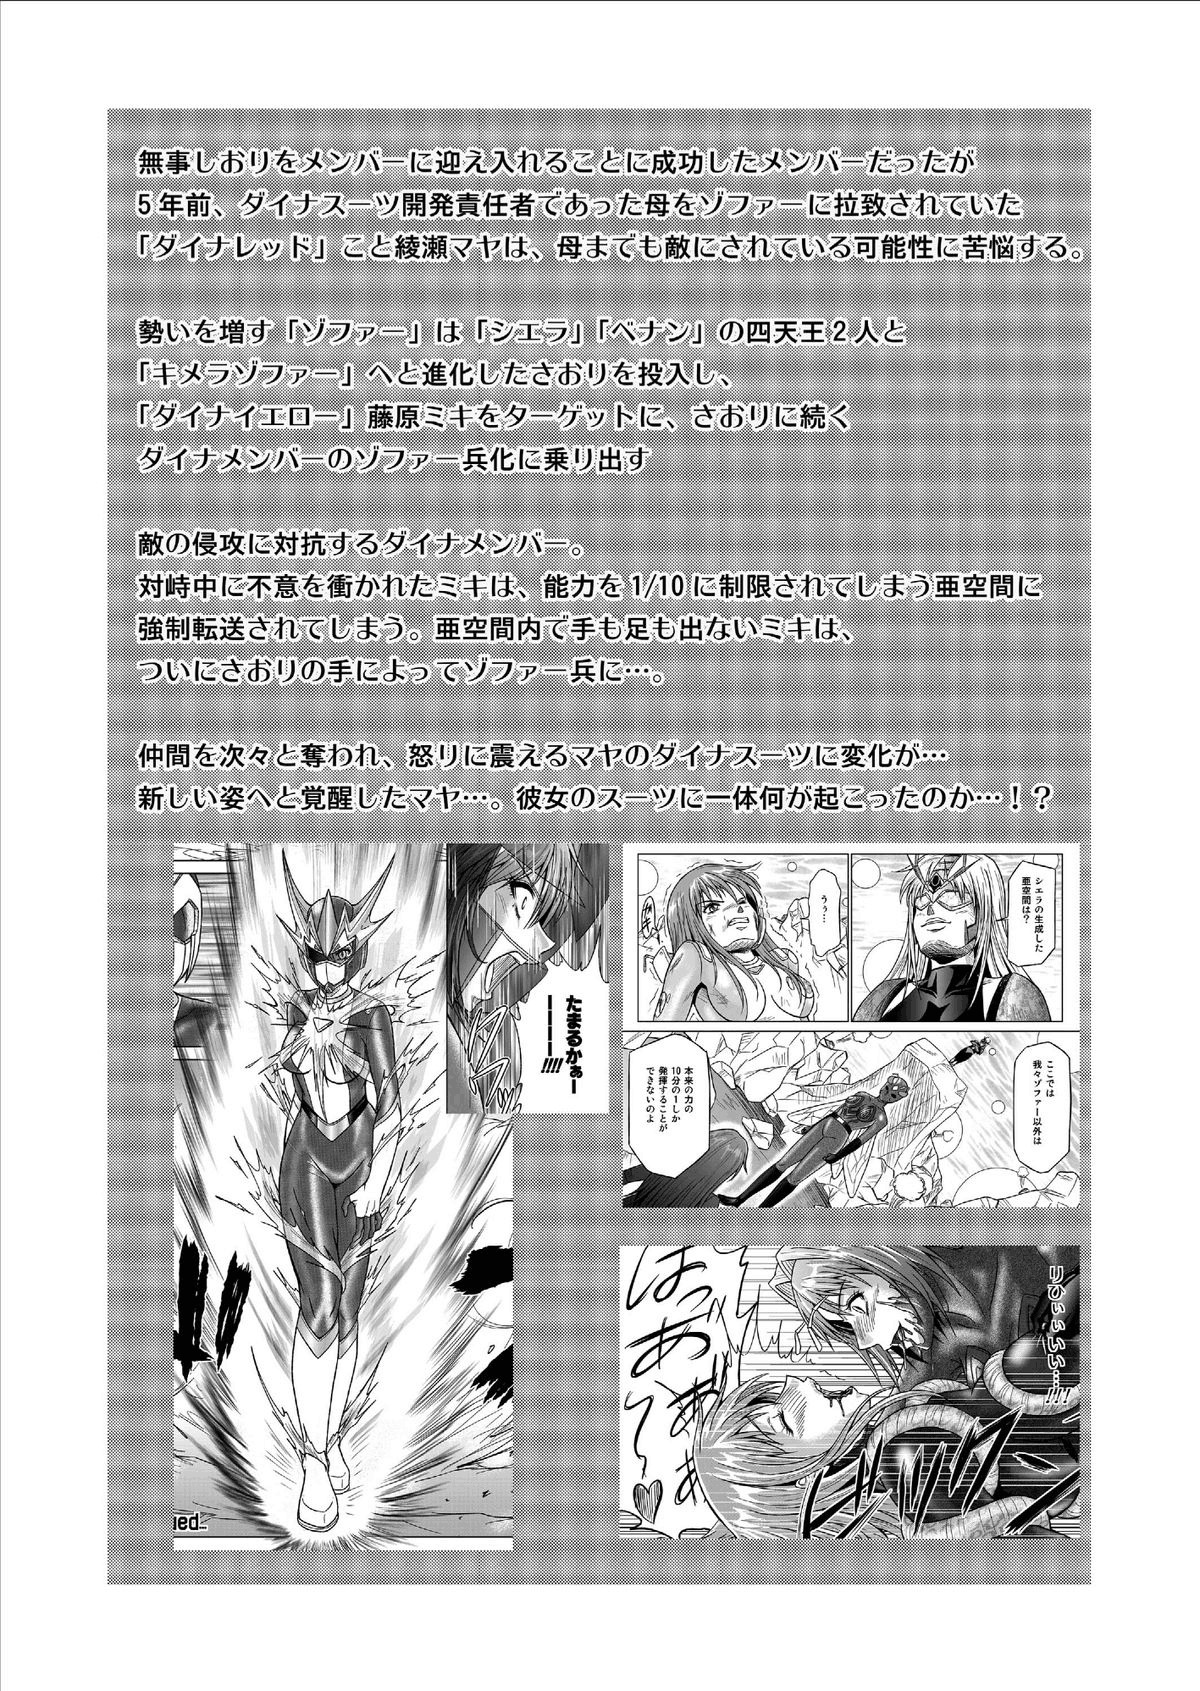 [Macxe's] Dinaranger Vol. 9-11 [English][SaHa] page 3 full